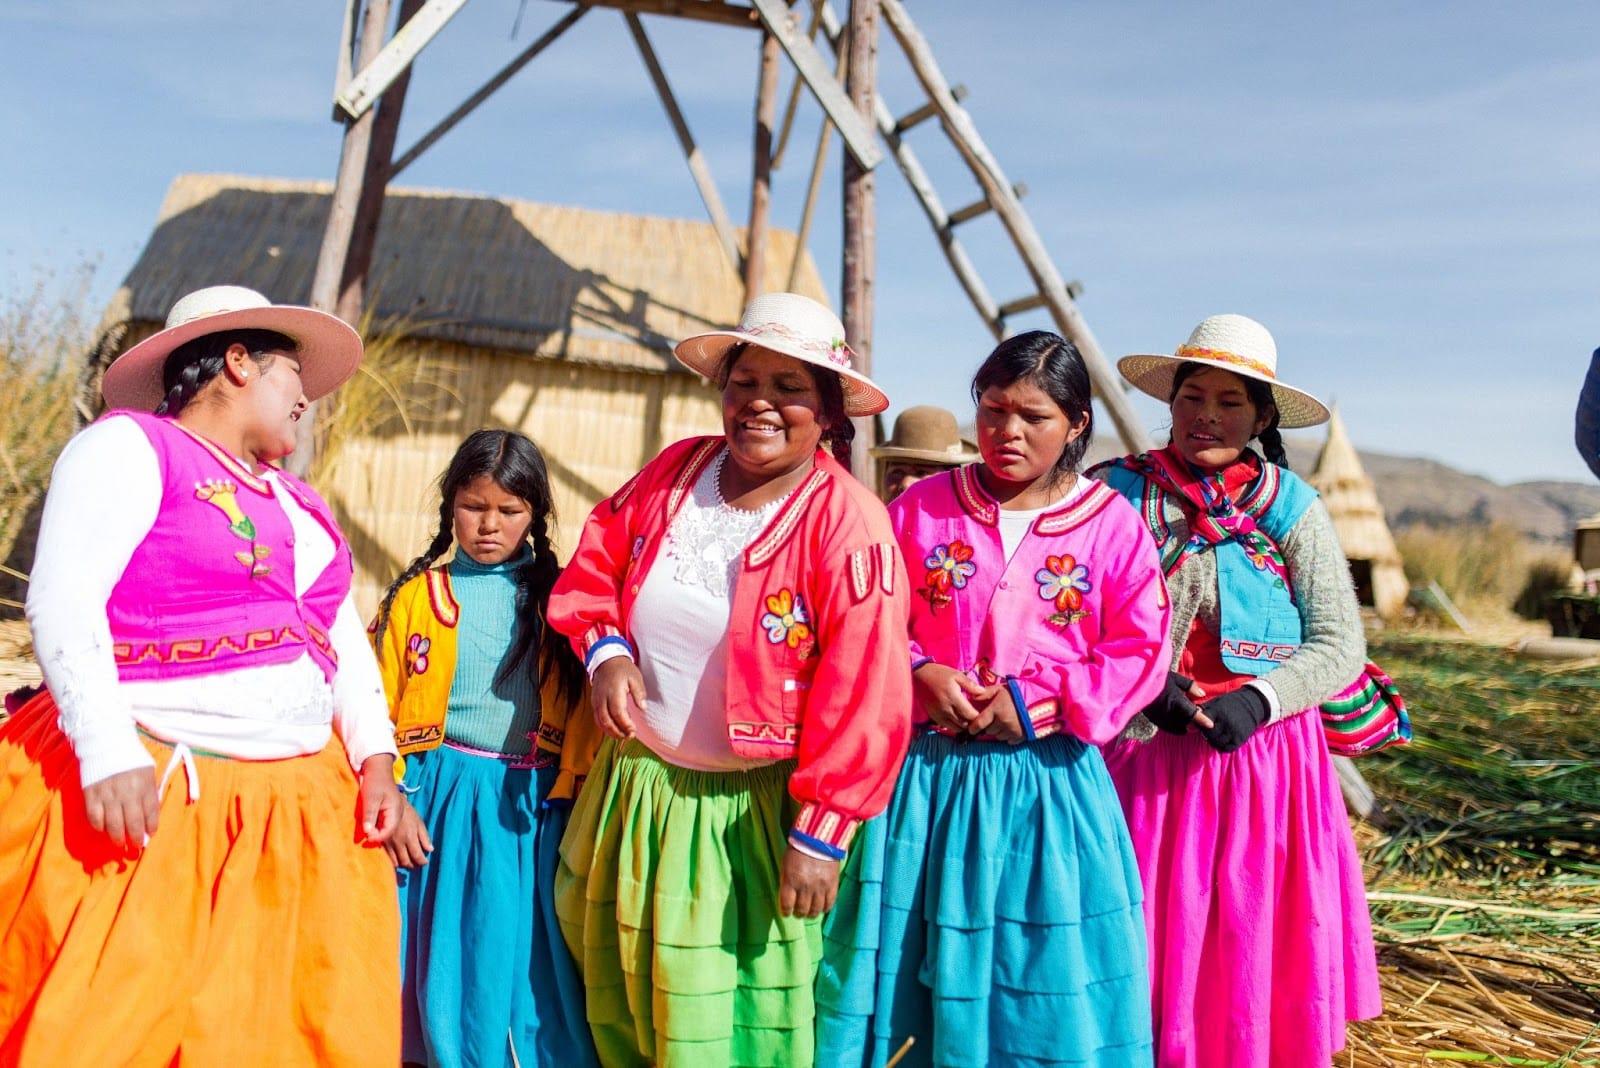 Women In Colorful Clothing Peru Culture